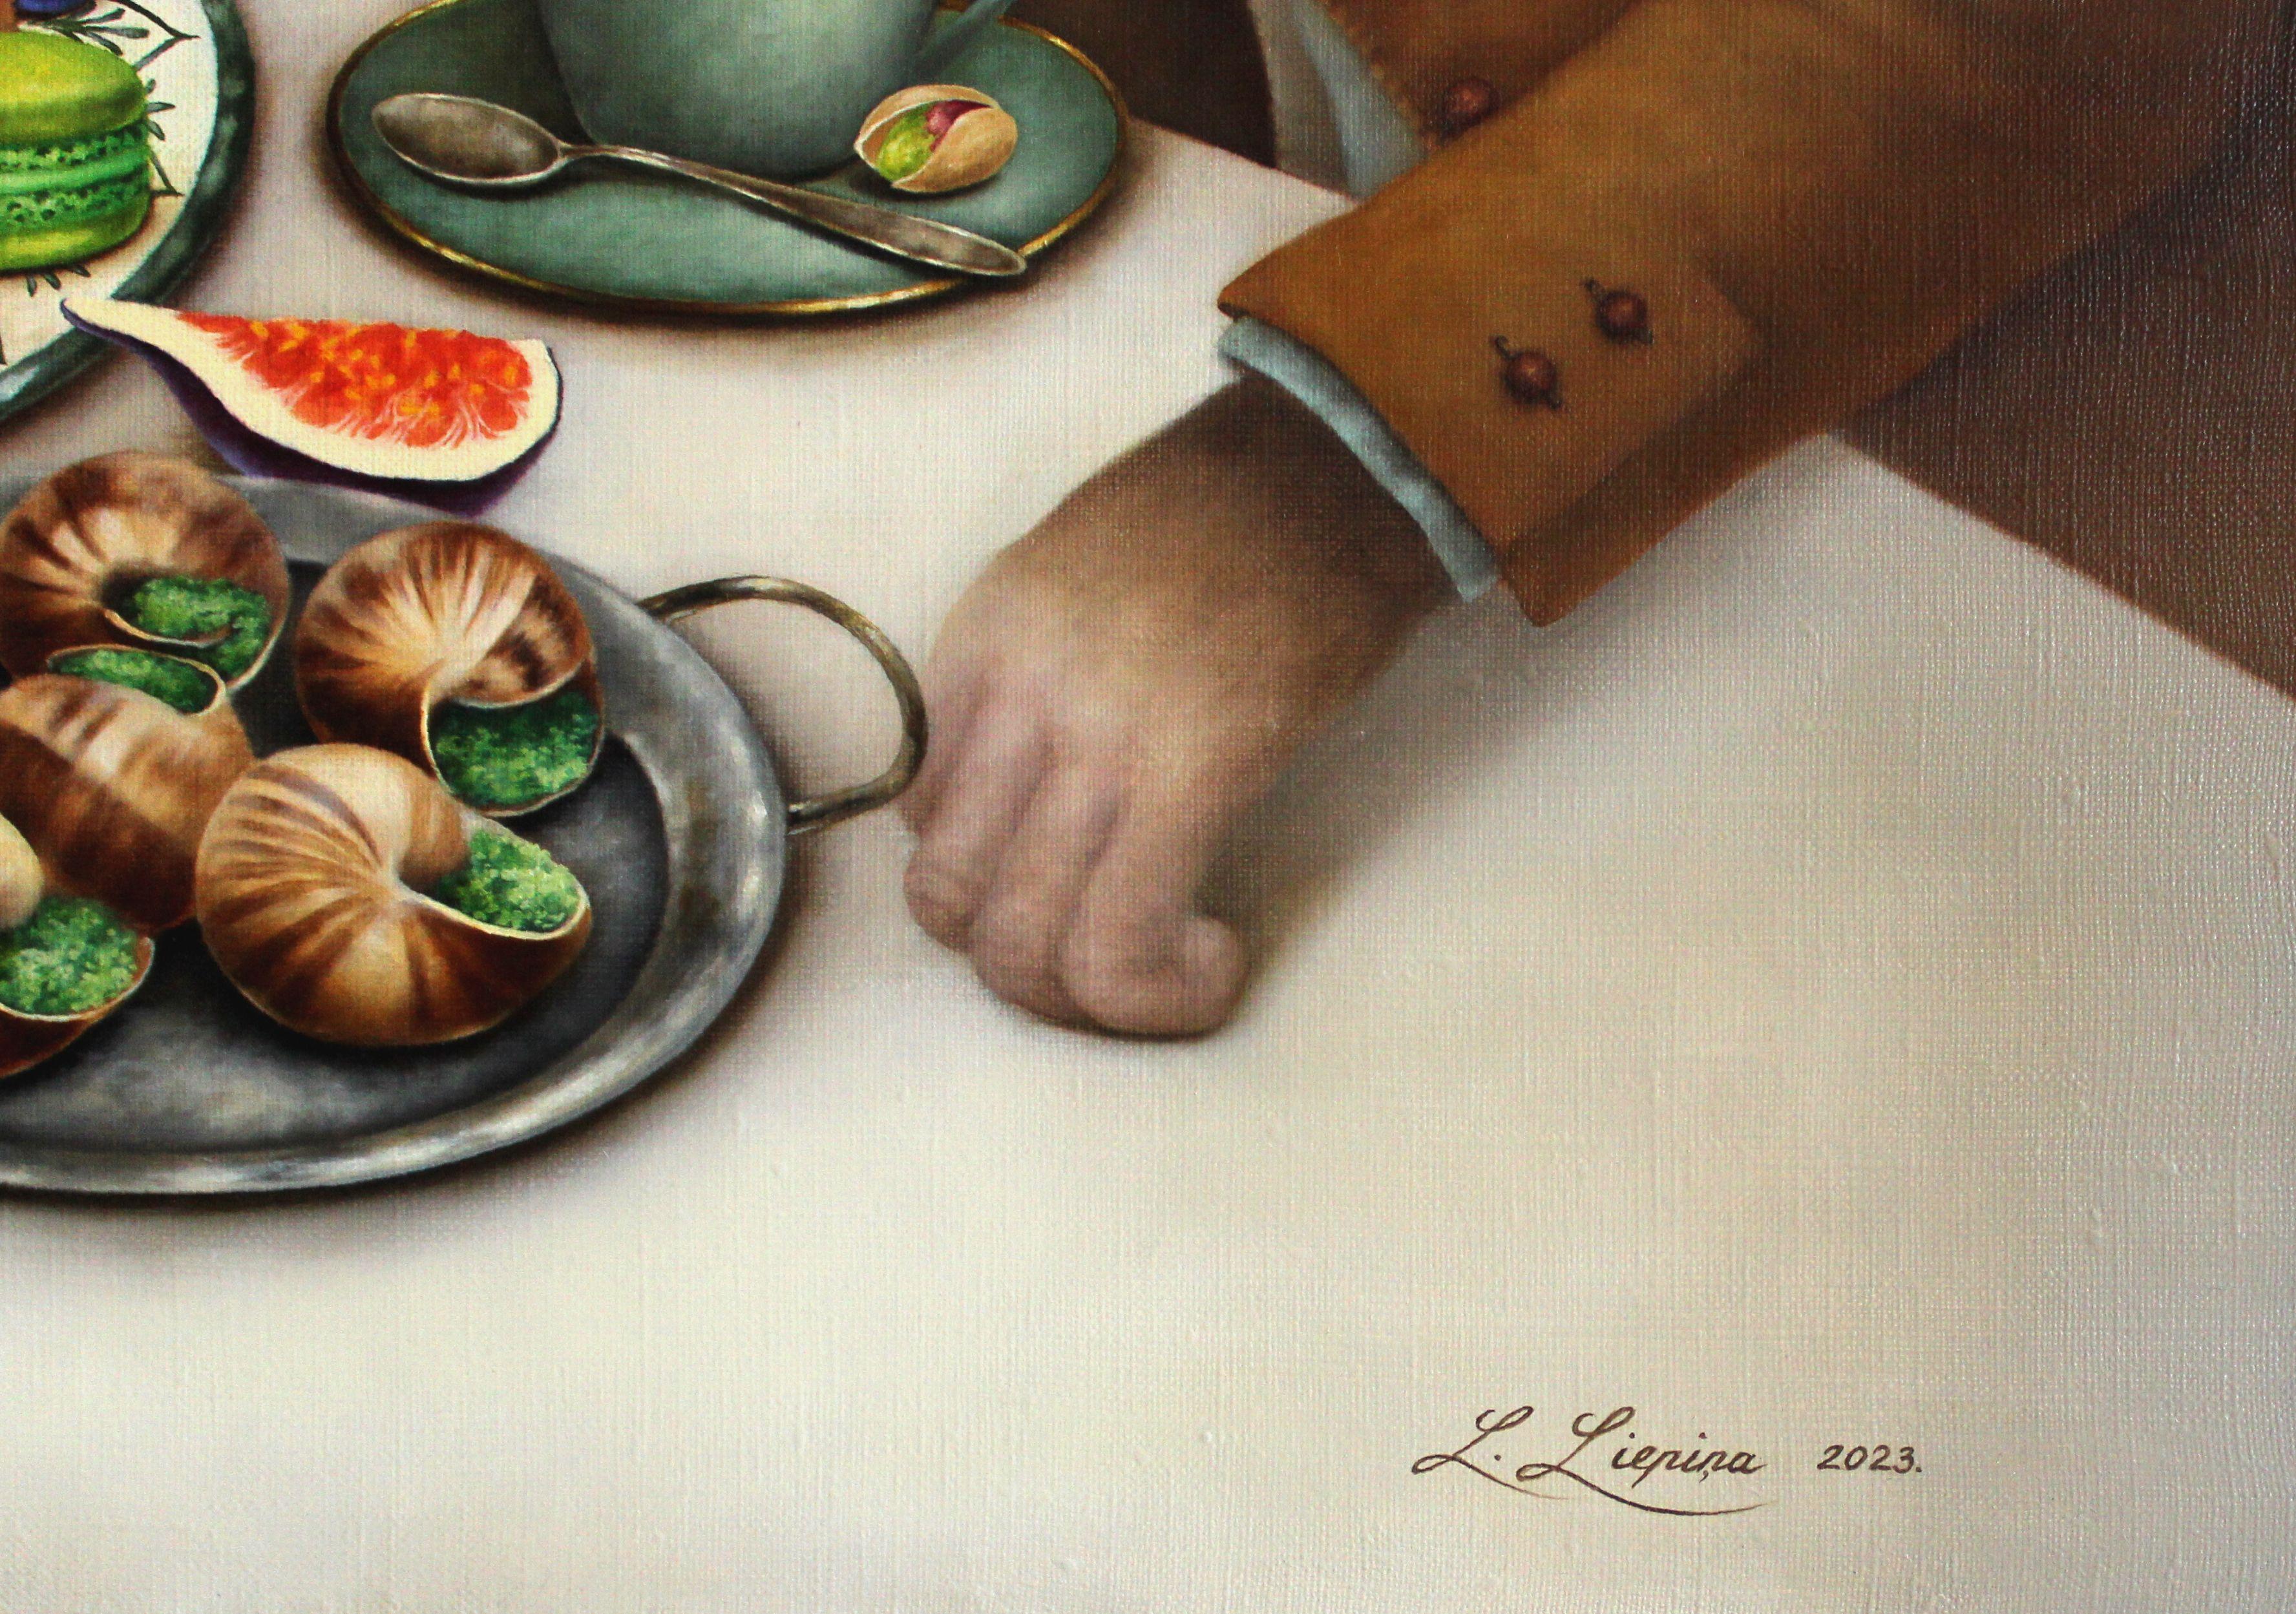 La Vie Est Belle. 2023, huile sur toile, 80 x70 cm - Painting de Liene Liepina 